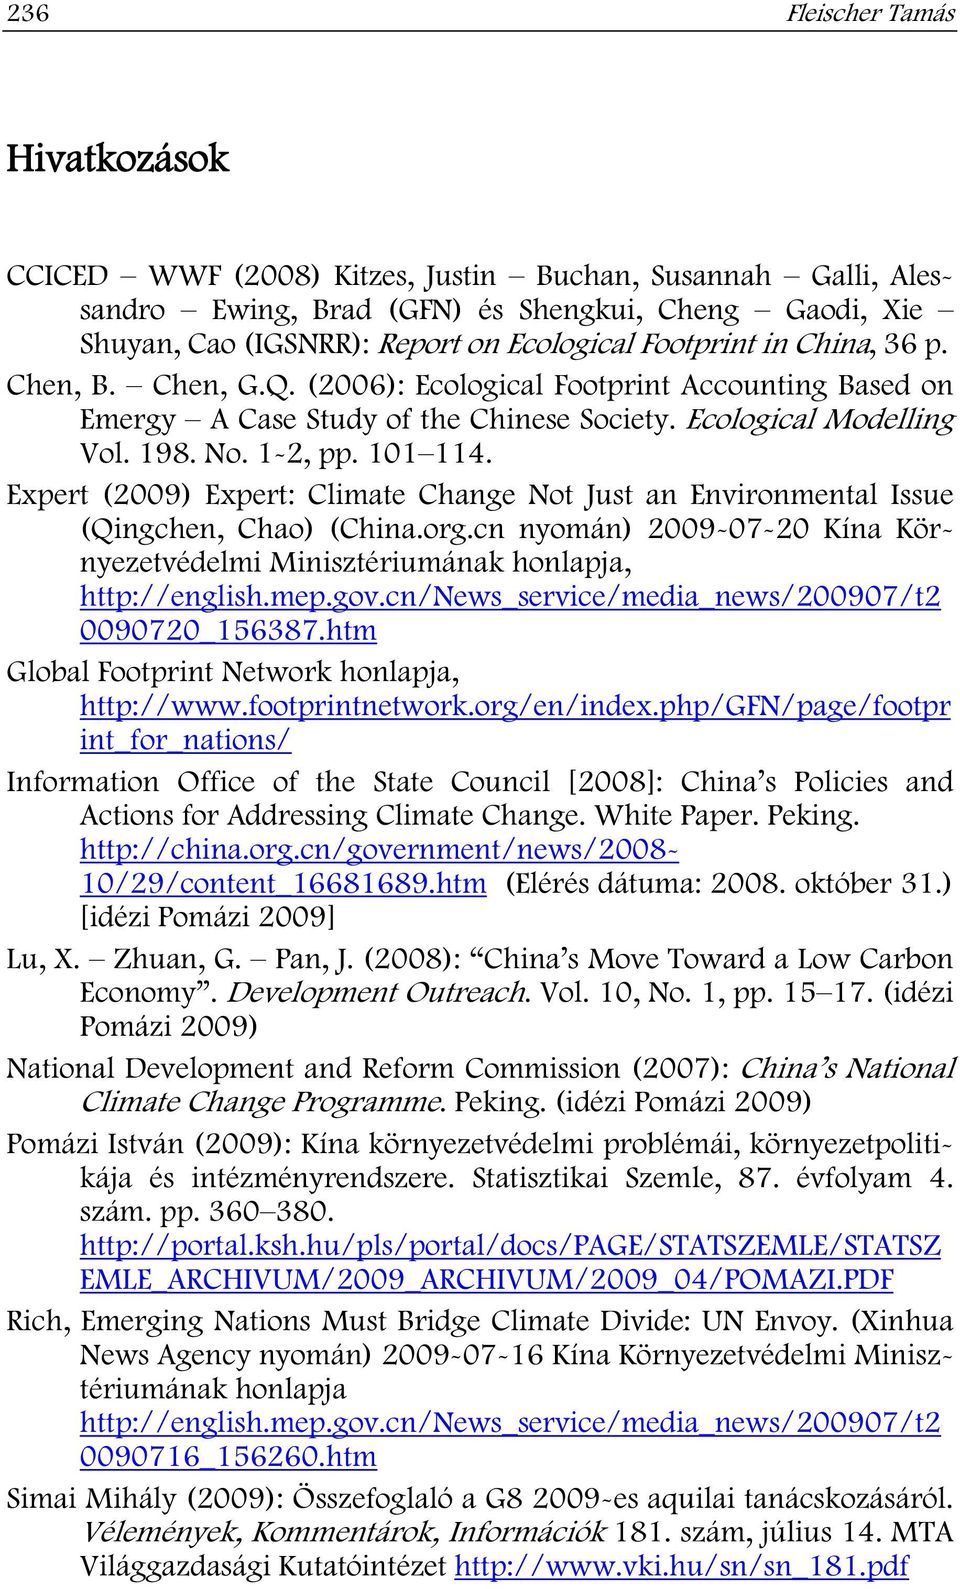 Expert (2009) Expert: Climate Change Not Just an Environmental Issue (Qingchen, Chao) (China.org.cn nyomán) 2009-07-20 Kína Környezetvédelmi Minisztériumának honlapja, http://english.mep.gov.